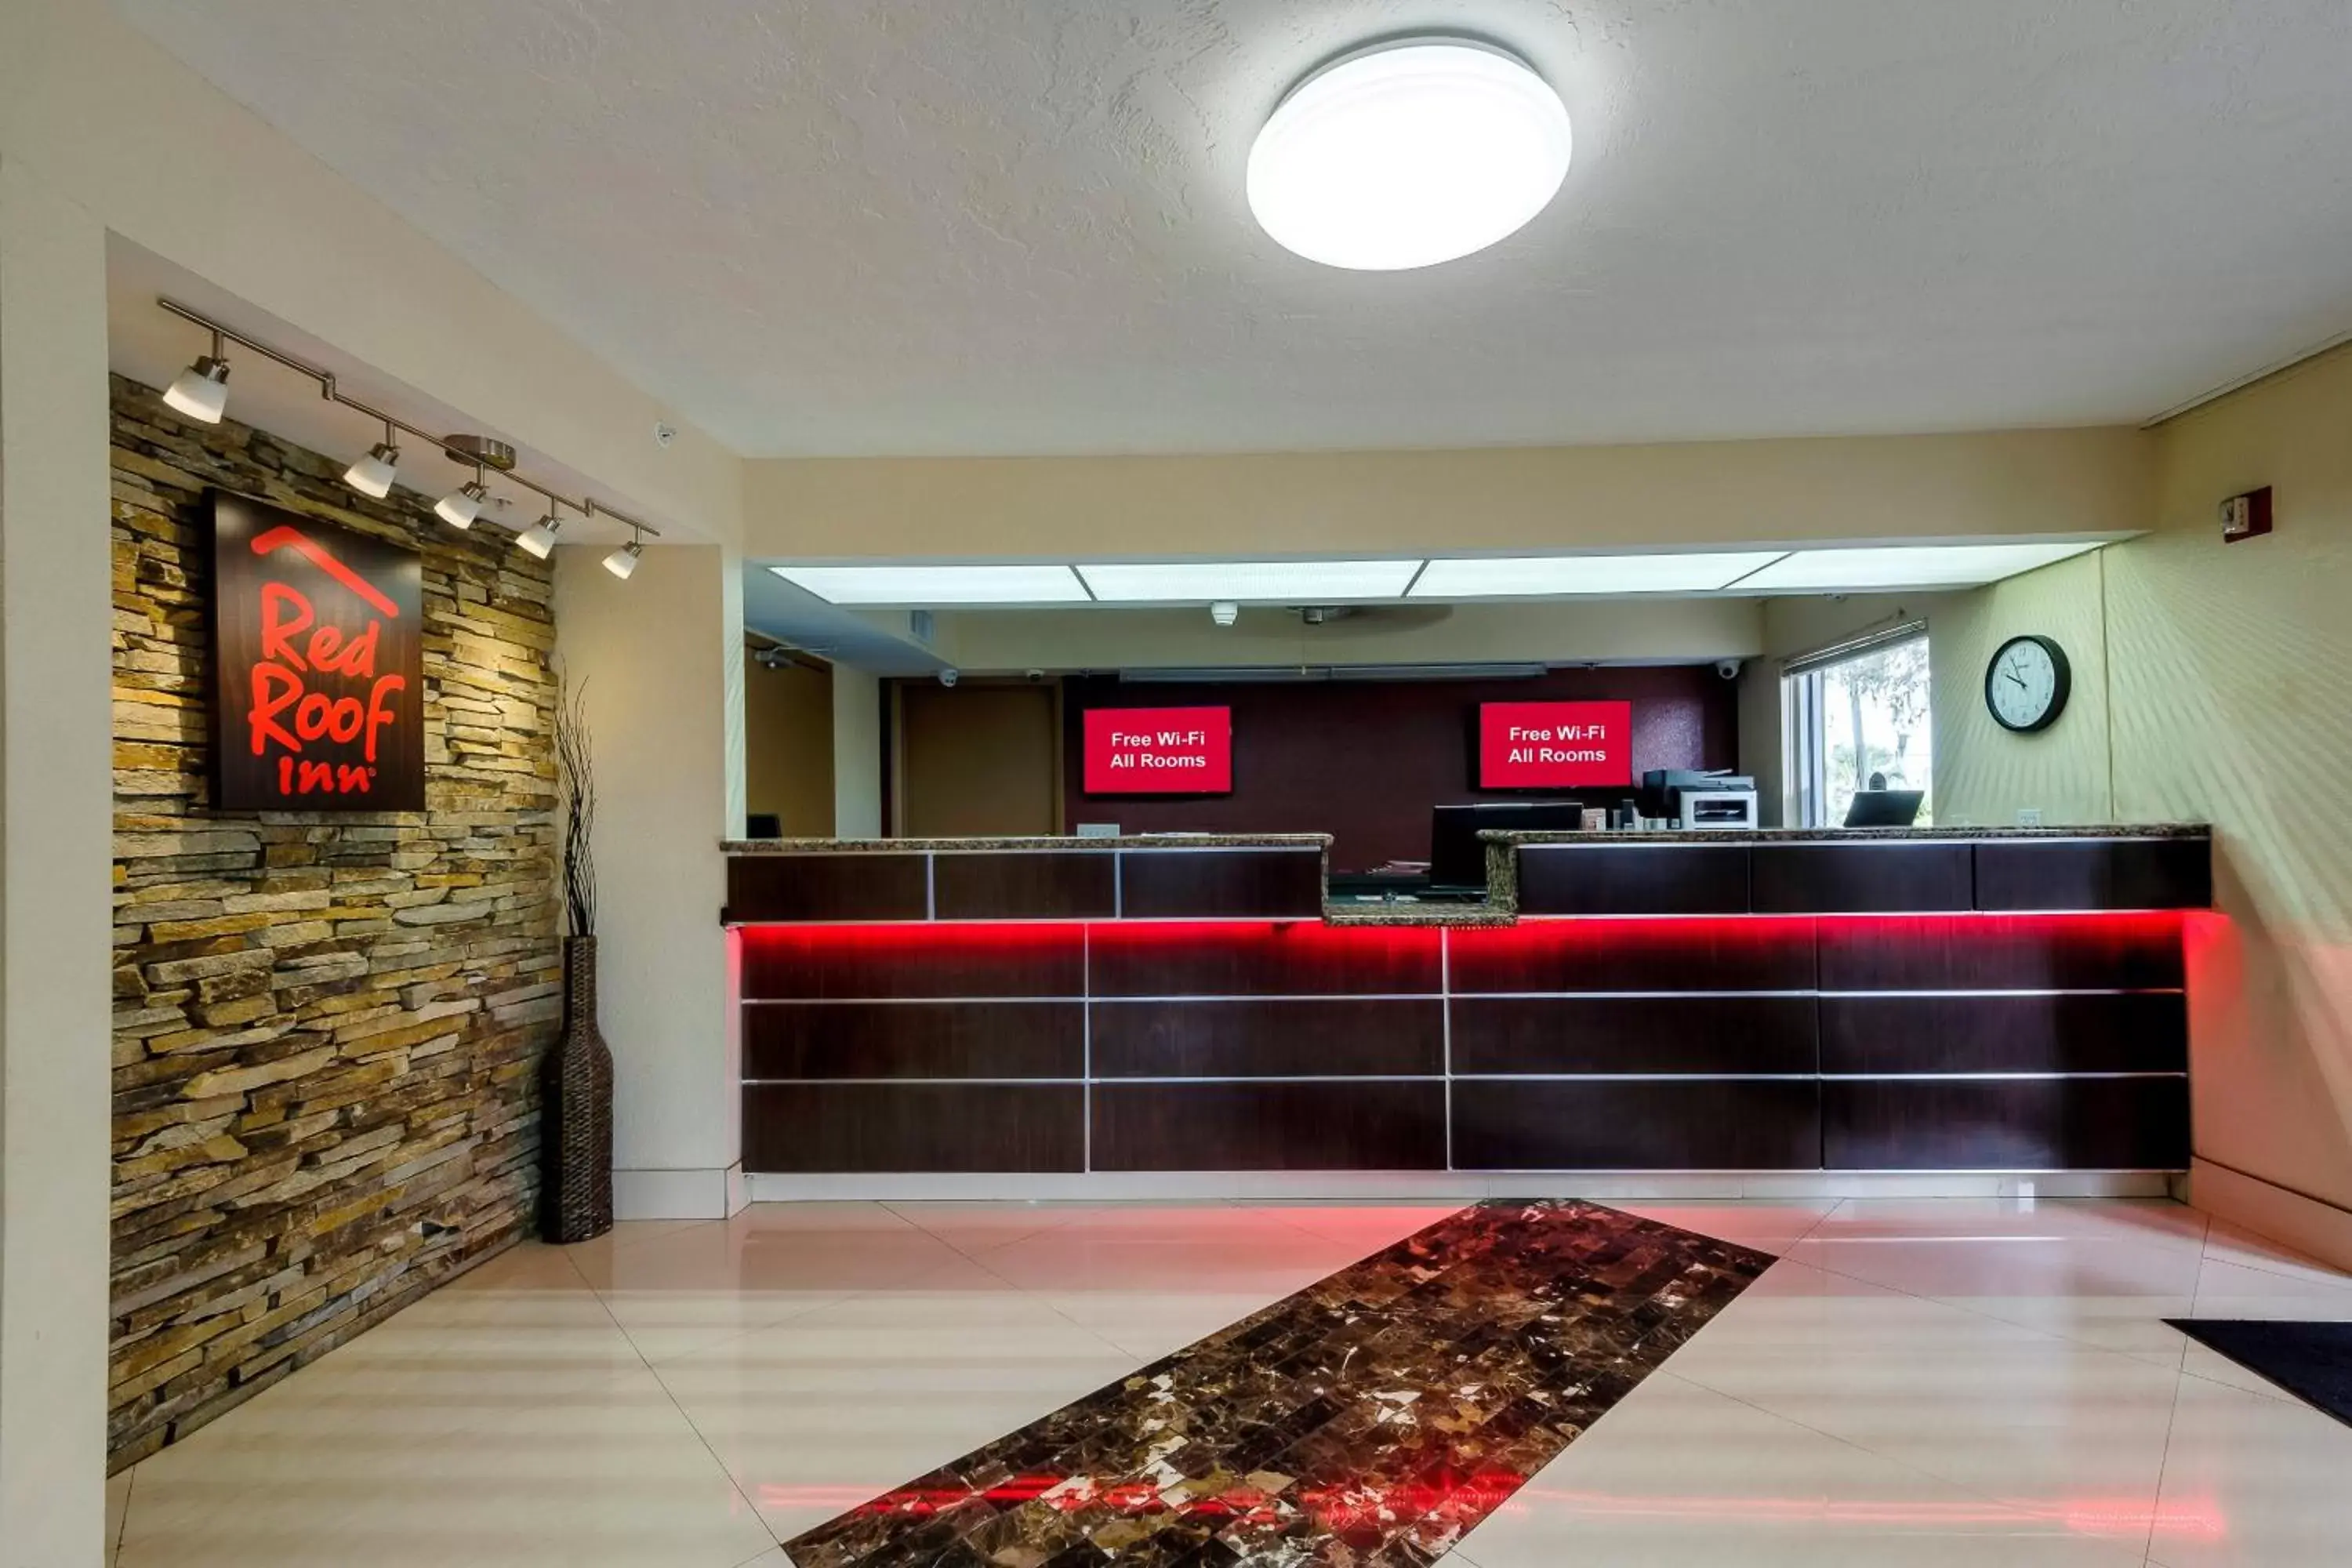 Lobby or reception, Lobby/Reception in Red Roof Inn Ellenton - Bradenton NE